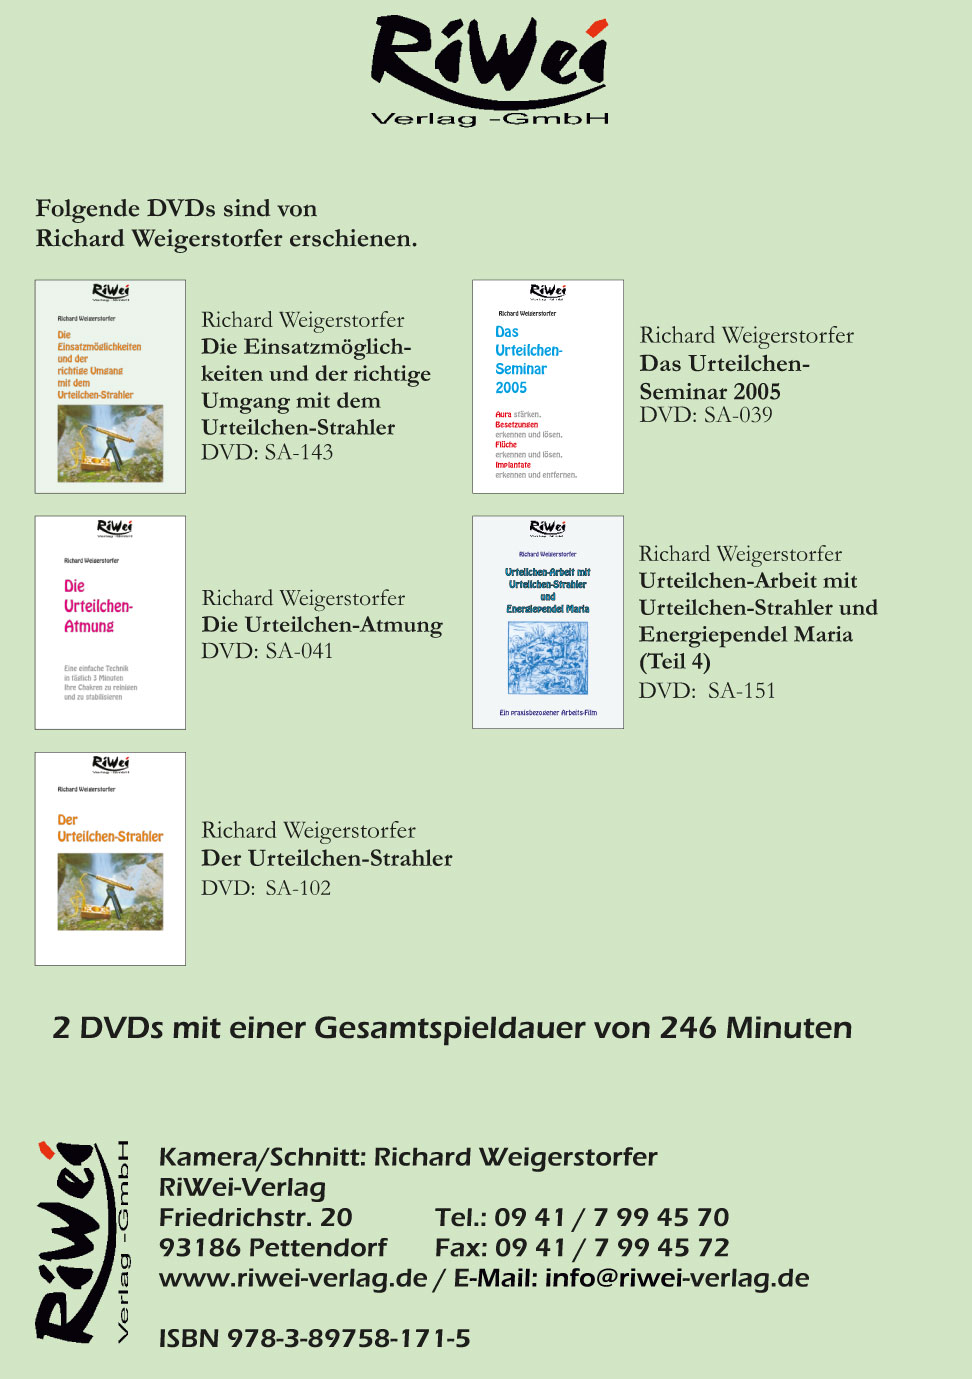 Richard Weigerstorfer - Das Urteilchen Seminar 2008 - Film Download